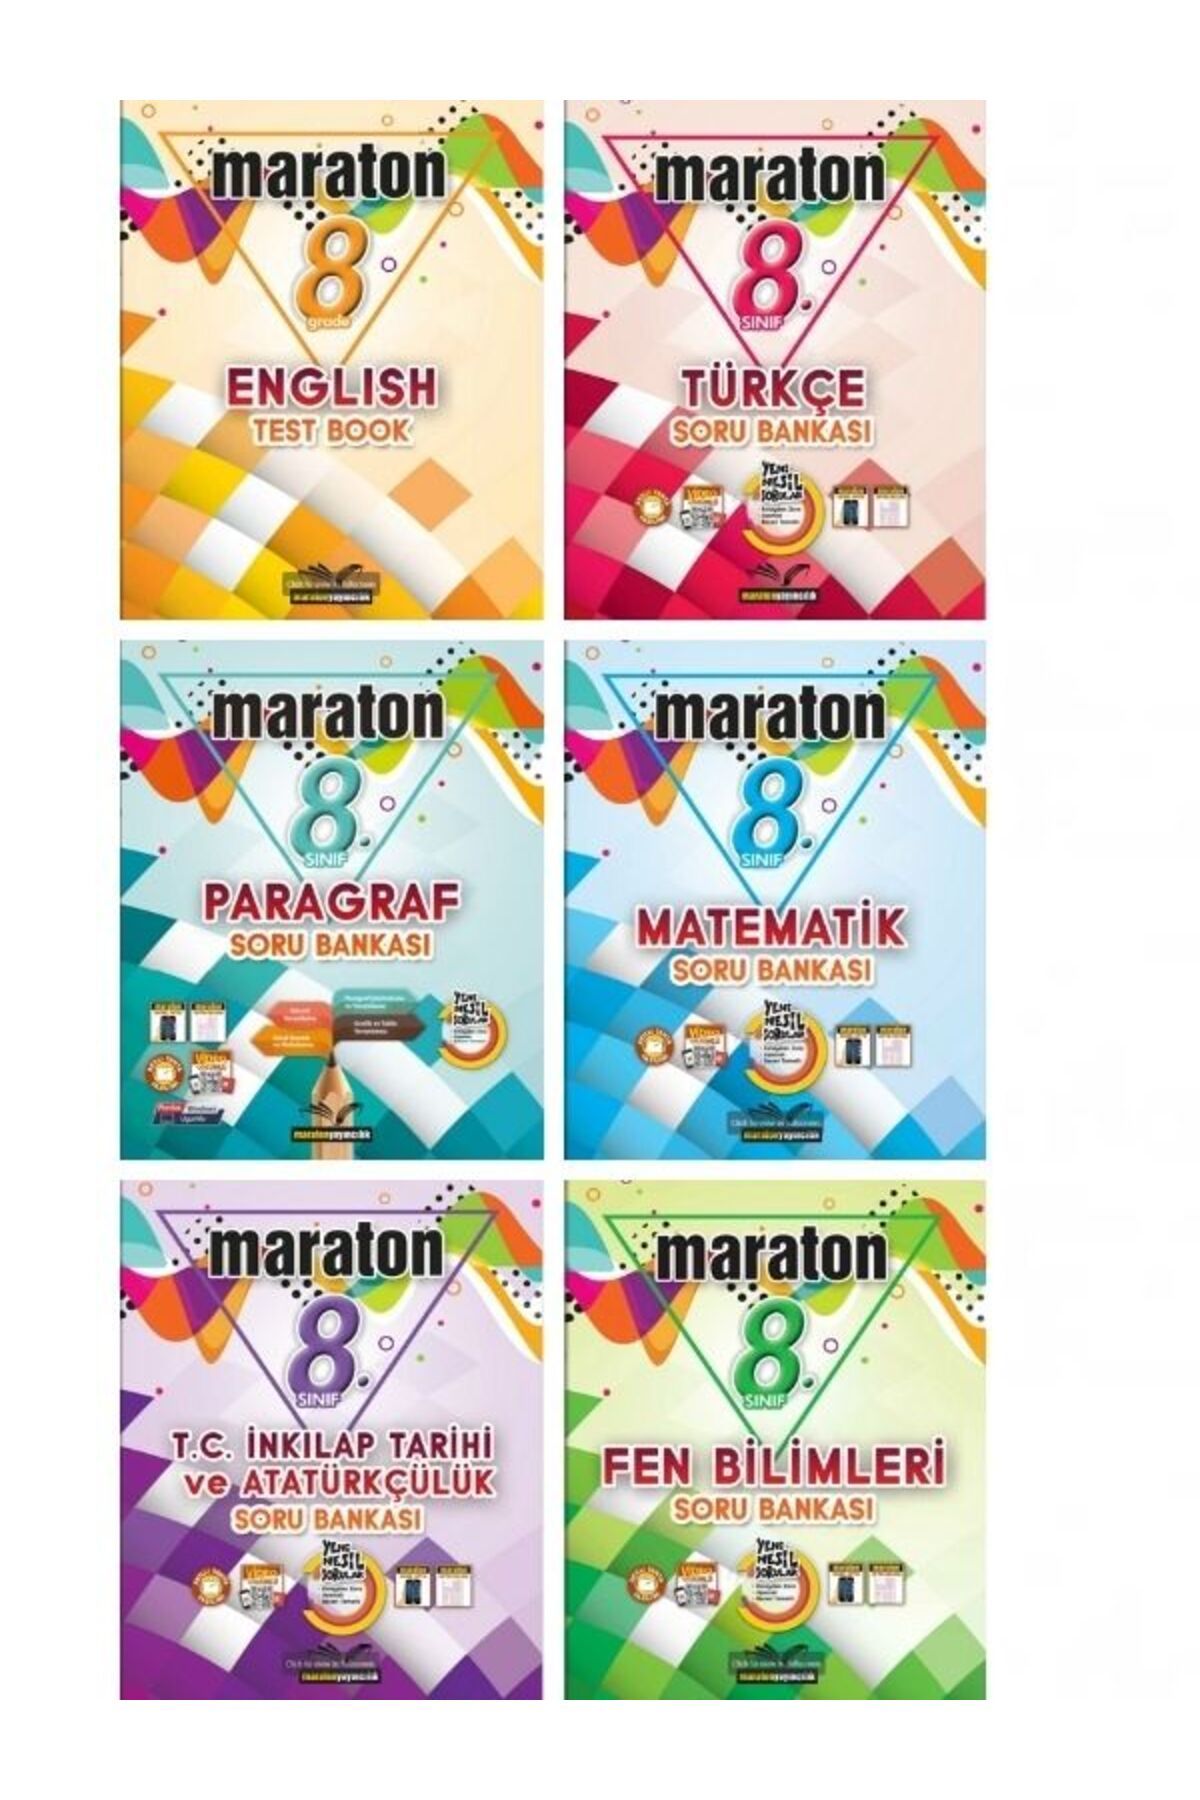 Maraton Yayınları maraton 8. Sınıf LGS Sınava Hazırlık Soru Bankası  (6 Kitap)